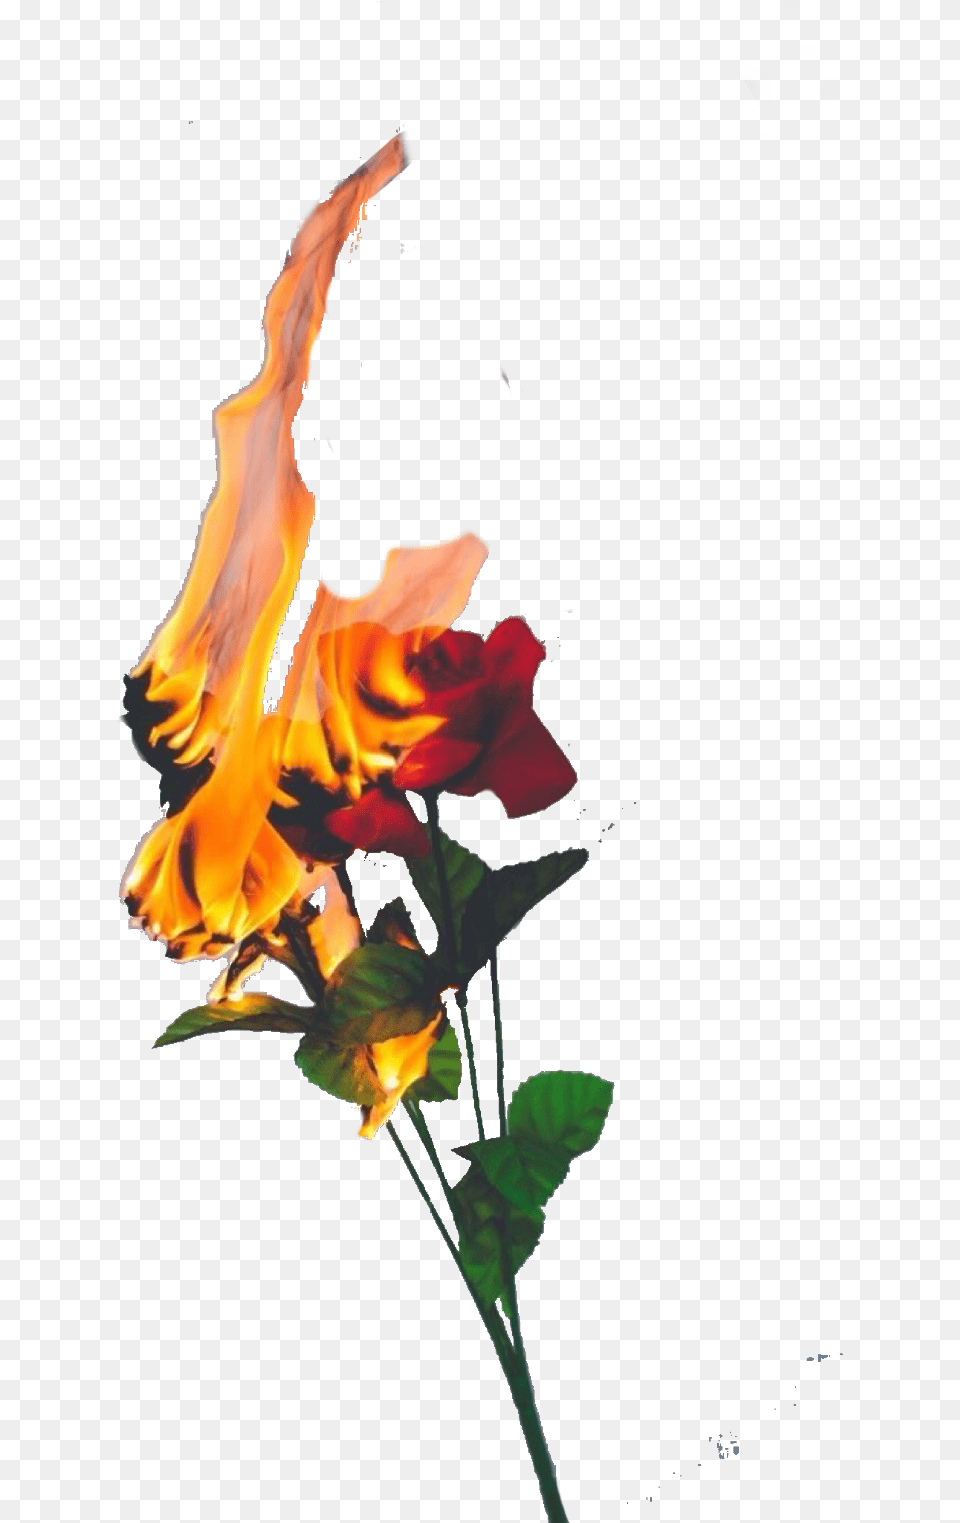 Roses Fire Flames Freetoedit Burning Rose, Flower, Leaf, Petal, Plant Free Png Download